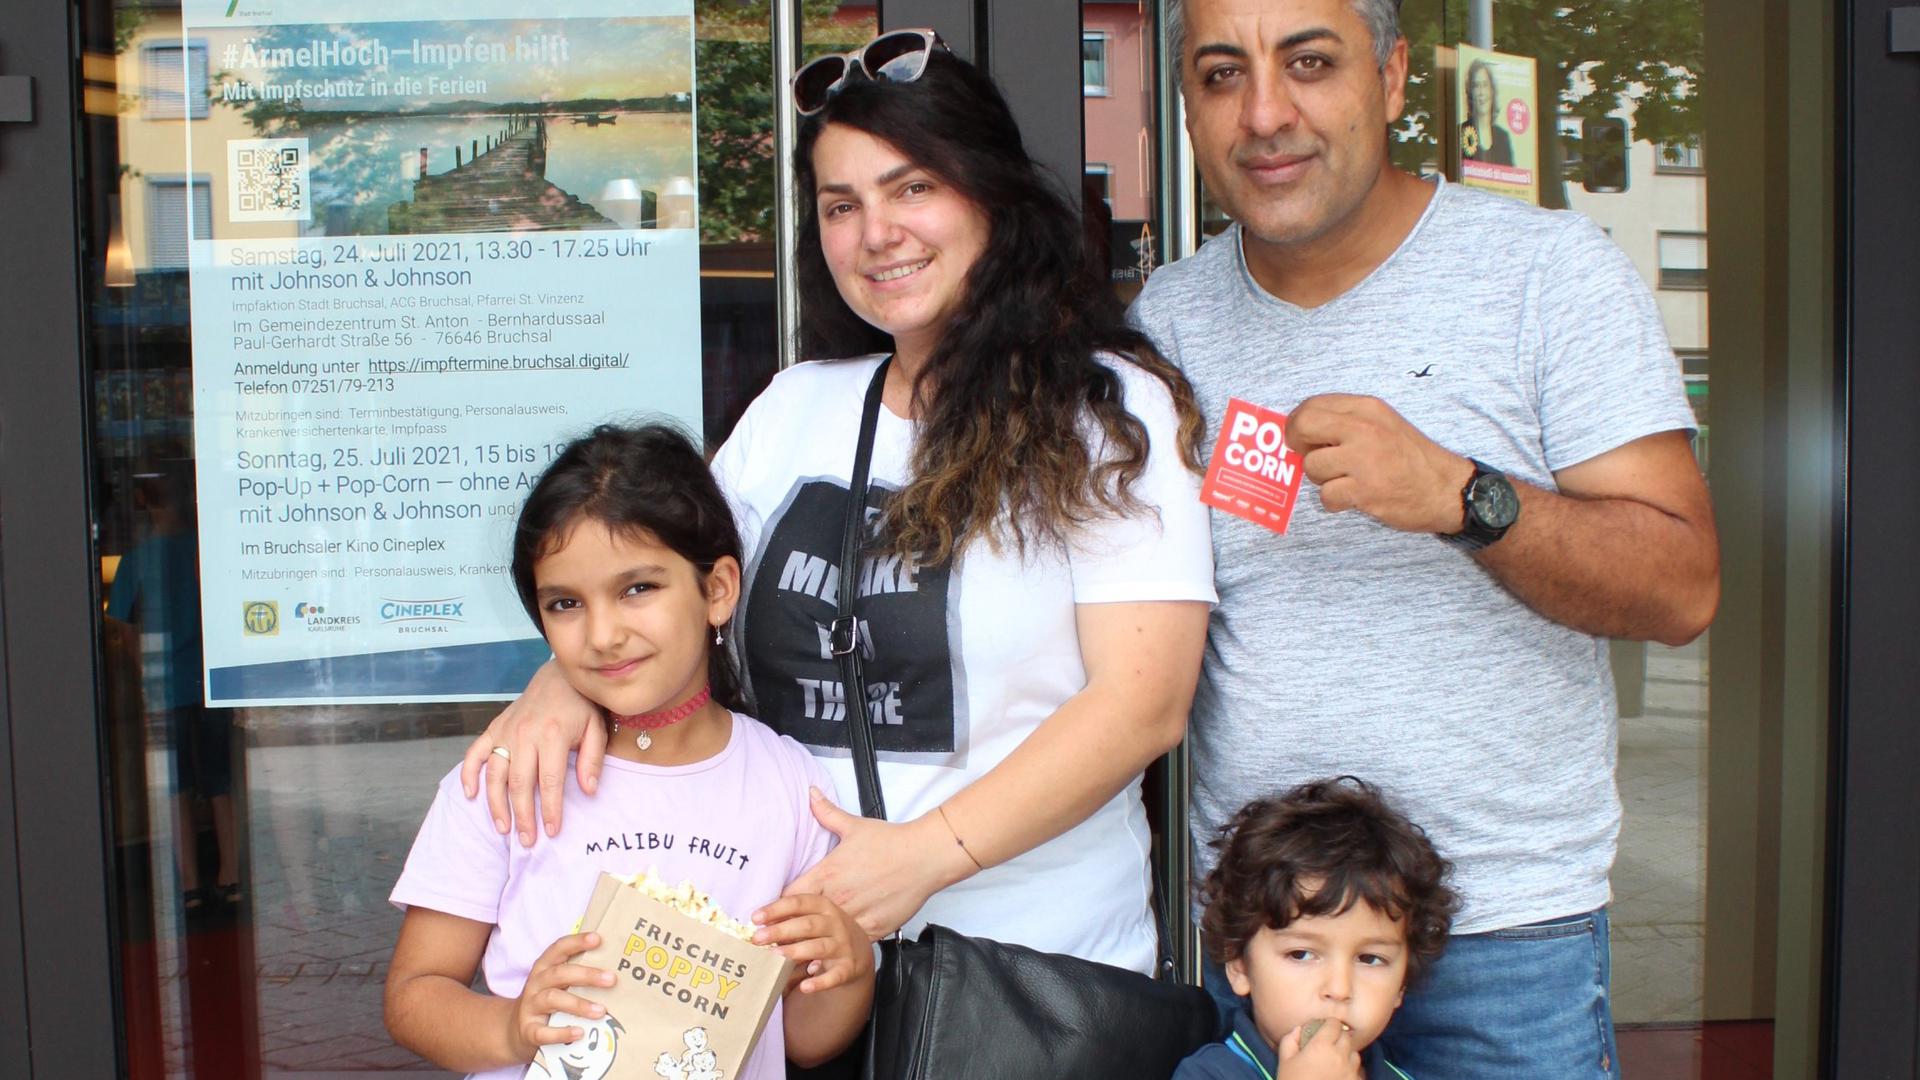 Für die Eltern gab es die Impfung, für die Kinder Popcorn. Familie Kemal Genc aus Forst mit Ehefrau Kudrec und den Kindern Elisa (7 J.), Liyam (3 J.) vor dem Kino. 